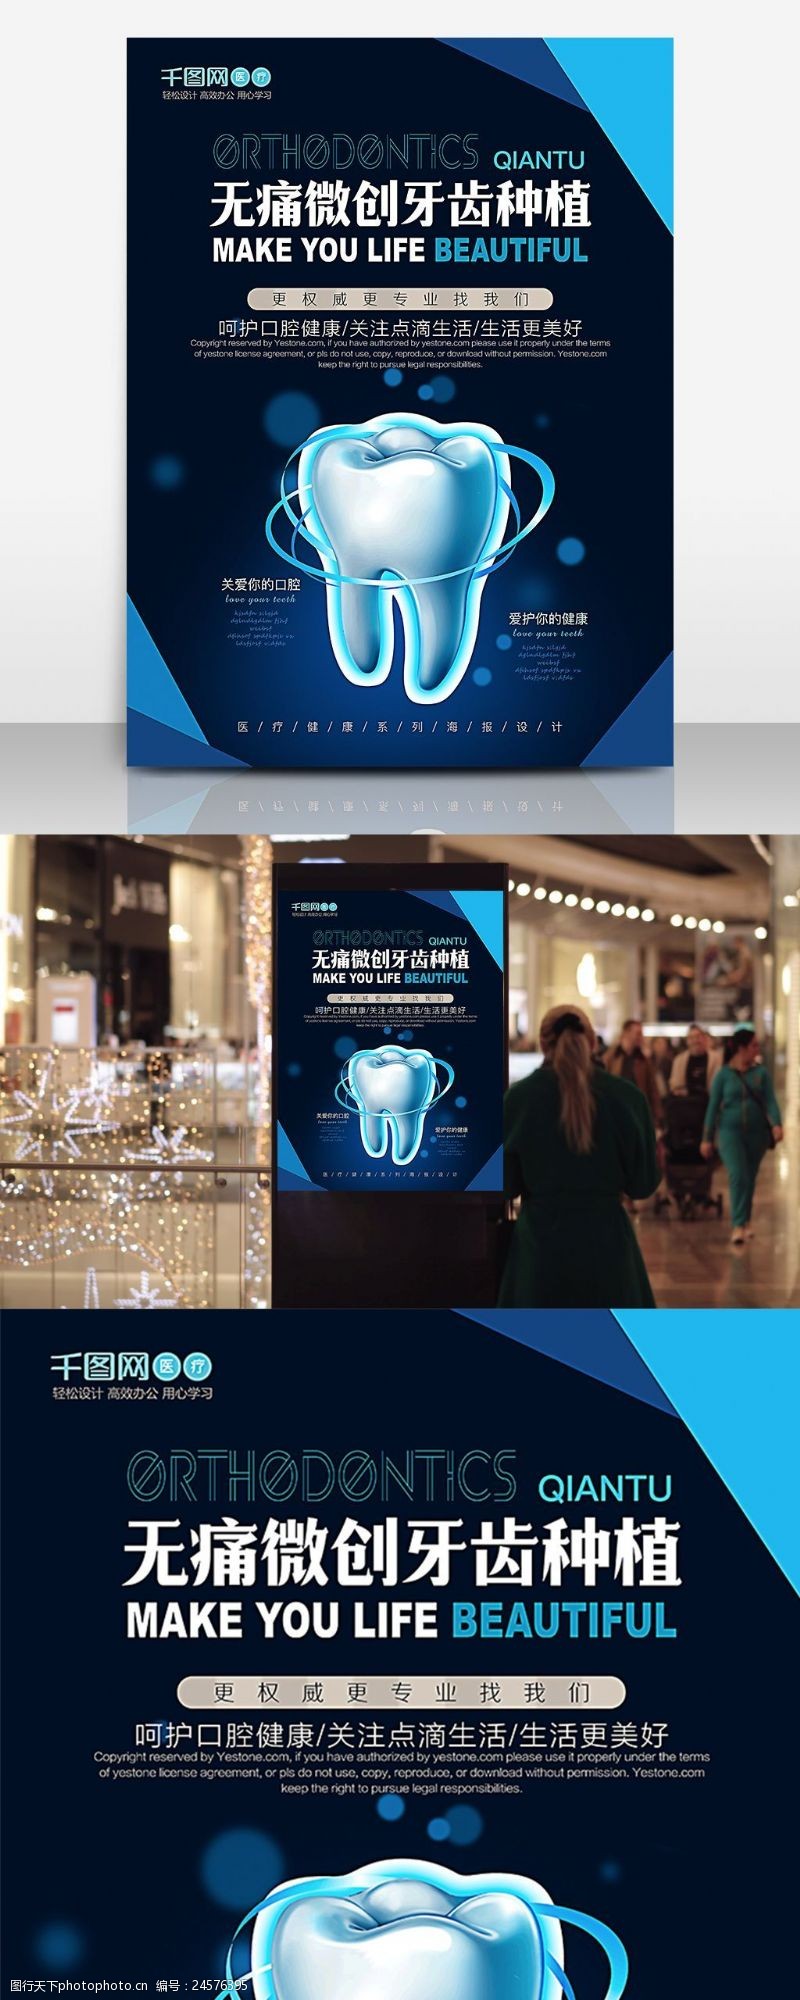 洗牙无痛微创植牙医疗健康宣传海报设计